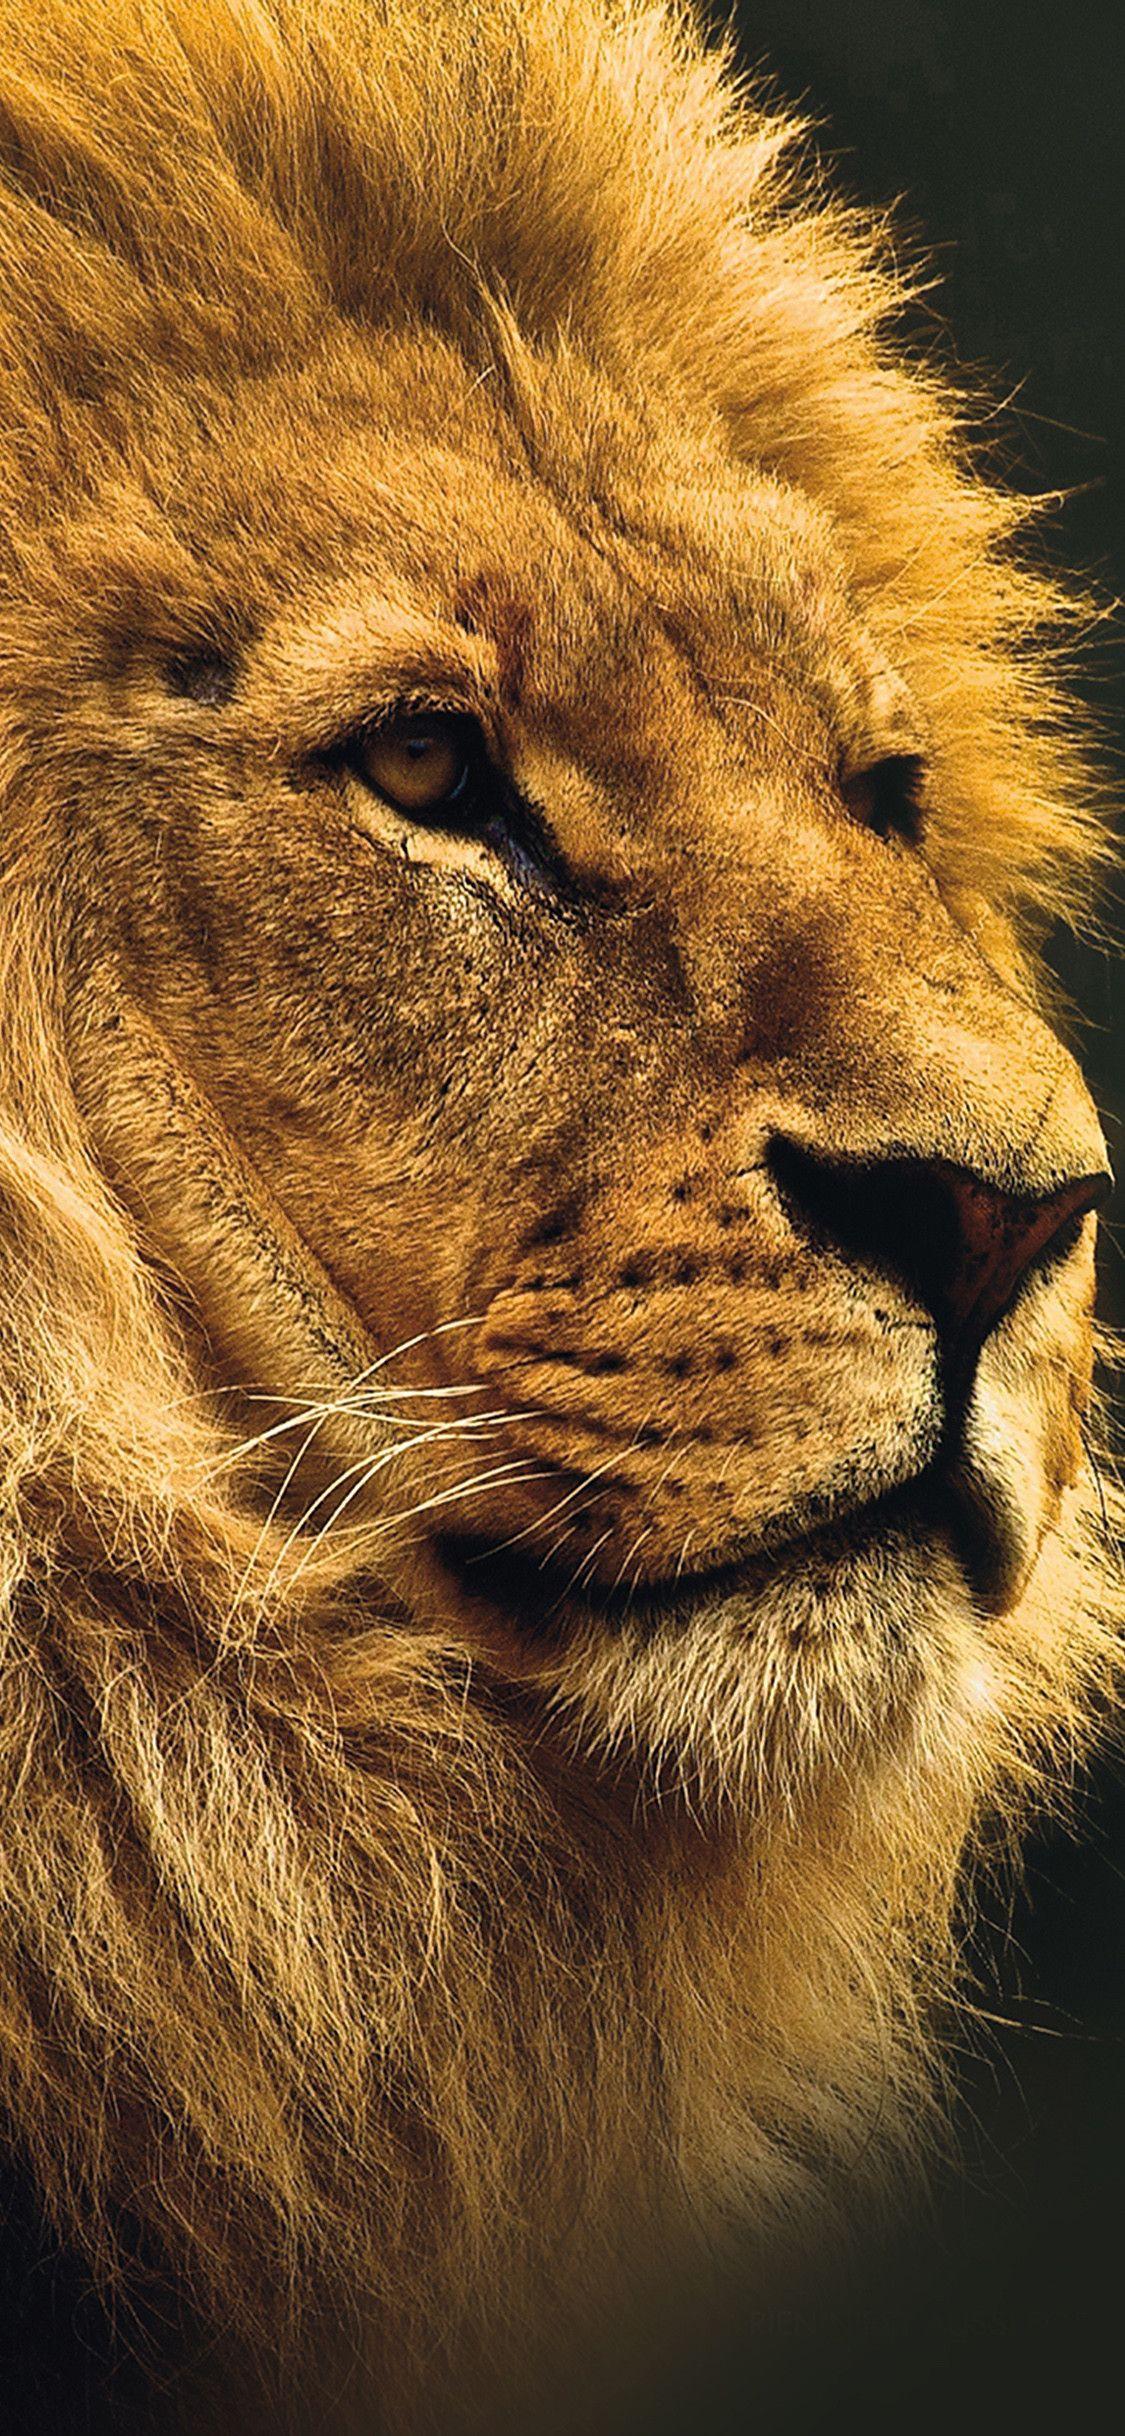 Lion iPhone X Wallpapers - Top Những Hình Ảnh Đẹp